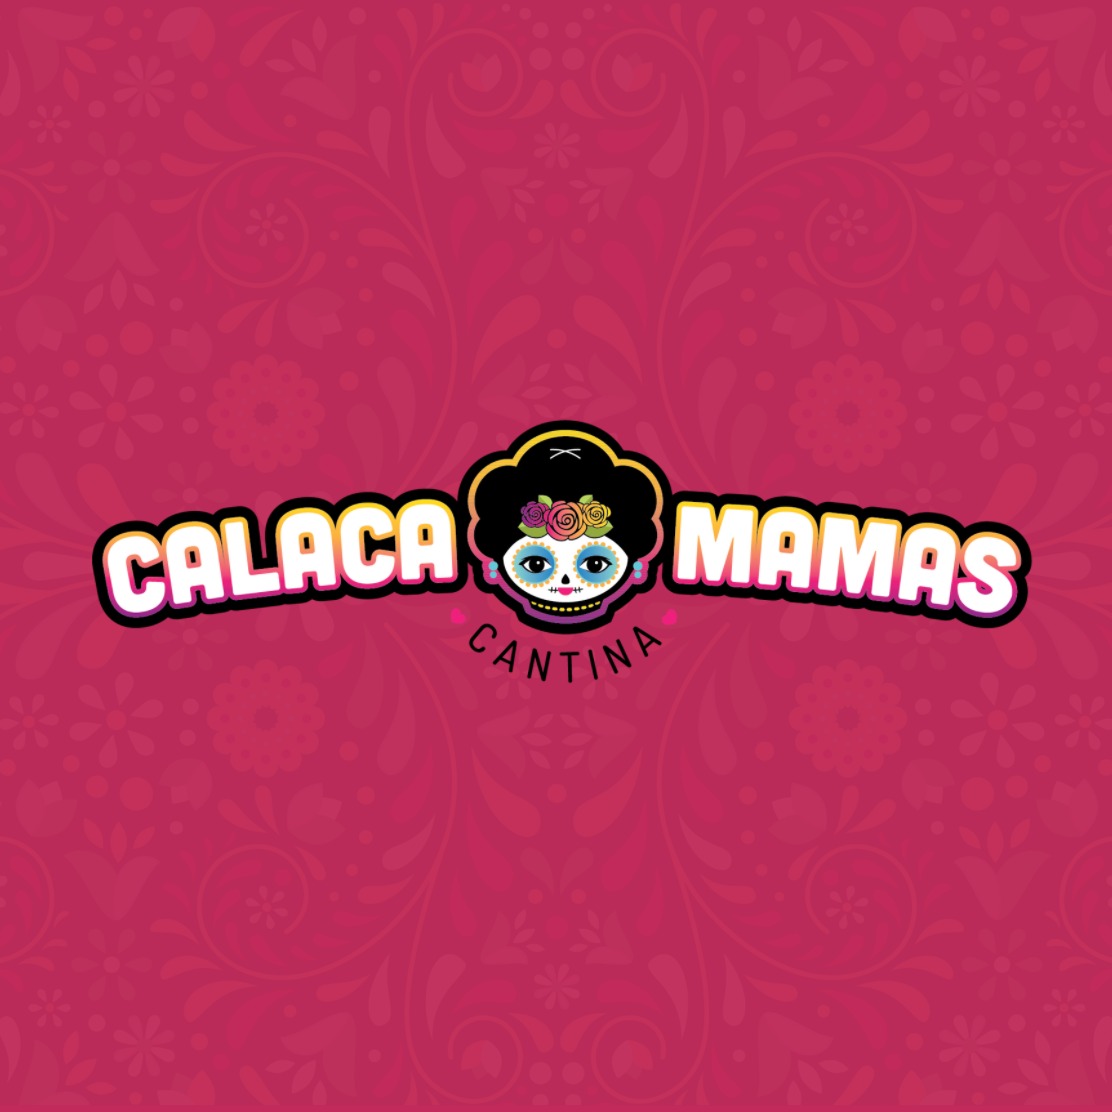 Calaca Mamas Cantina